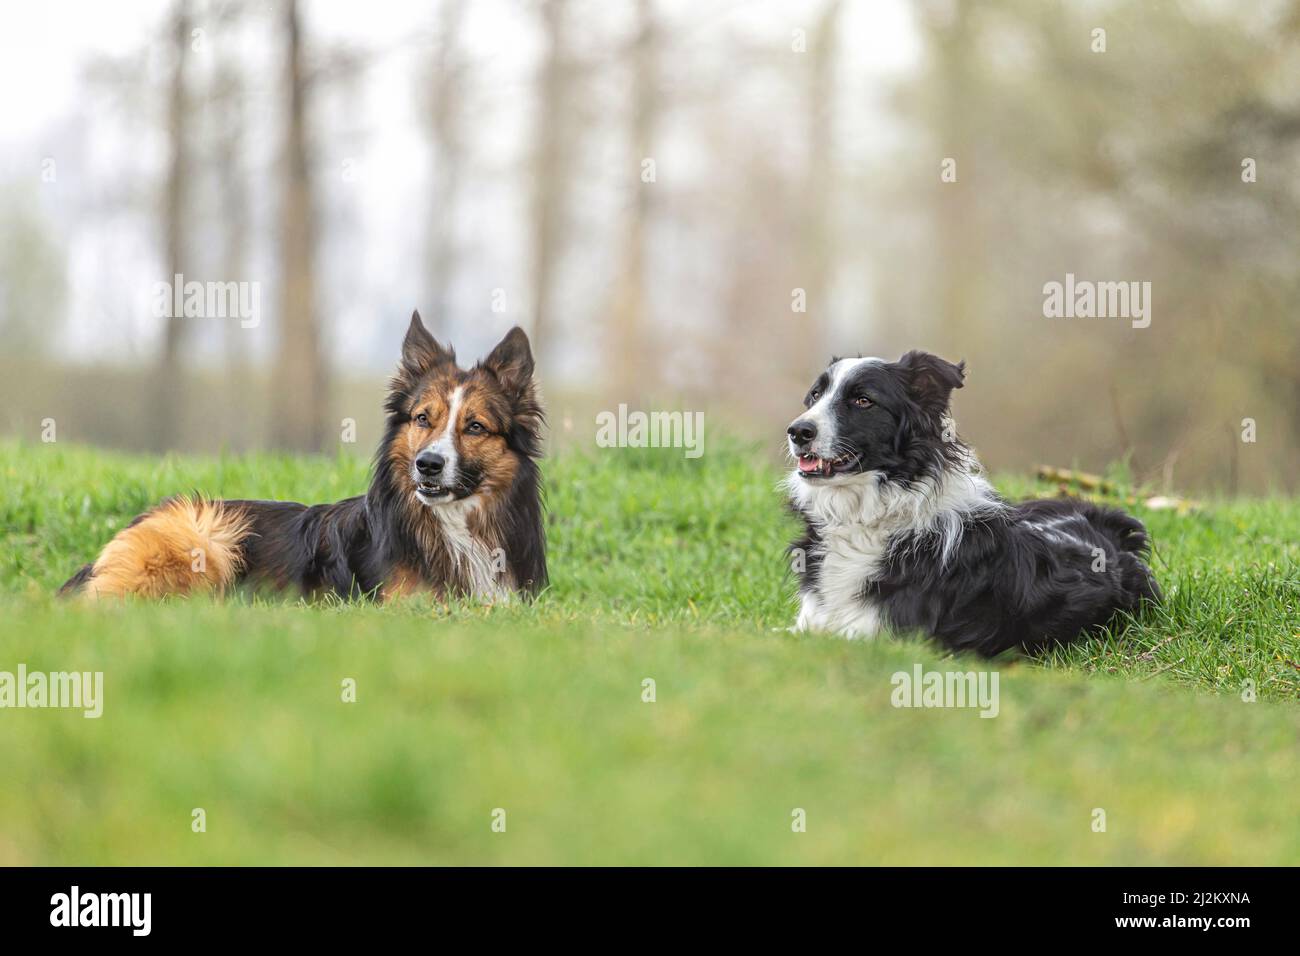 Hunde und Schlechtwettertage: Ein Border Collie Hund liegt an einem regnerischen Tag auf einer feuchten Wiese Stockfoto